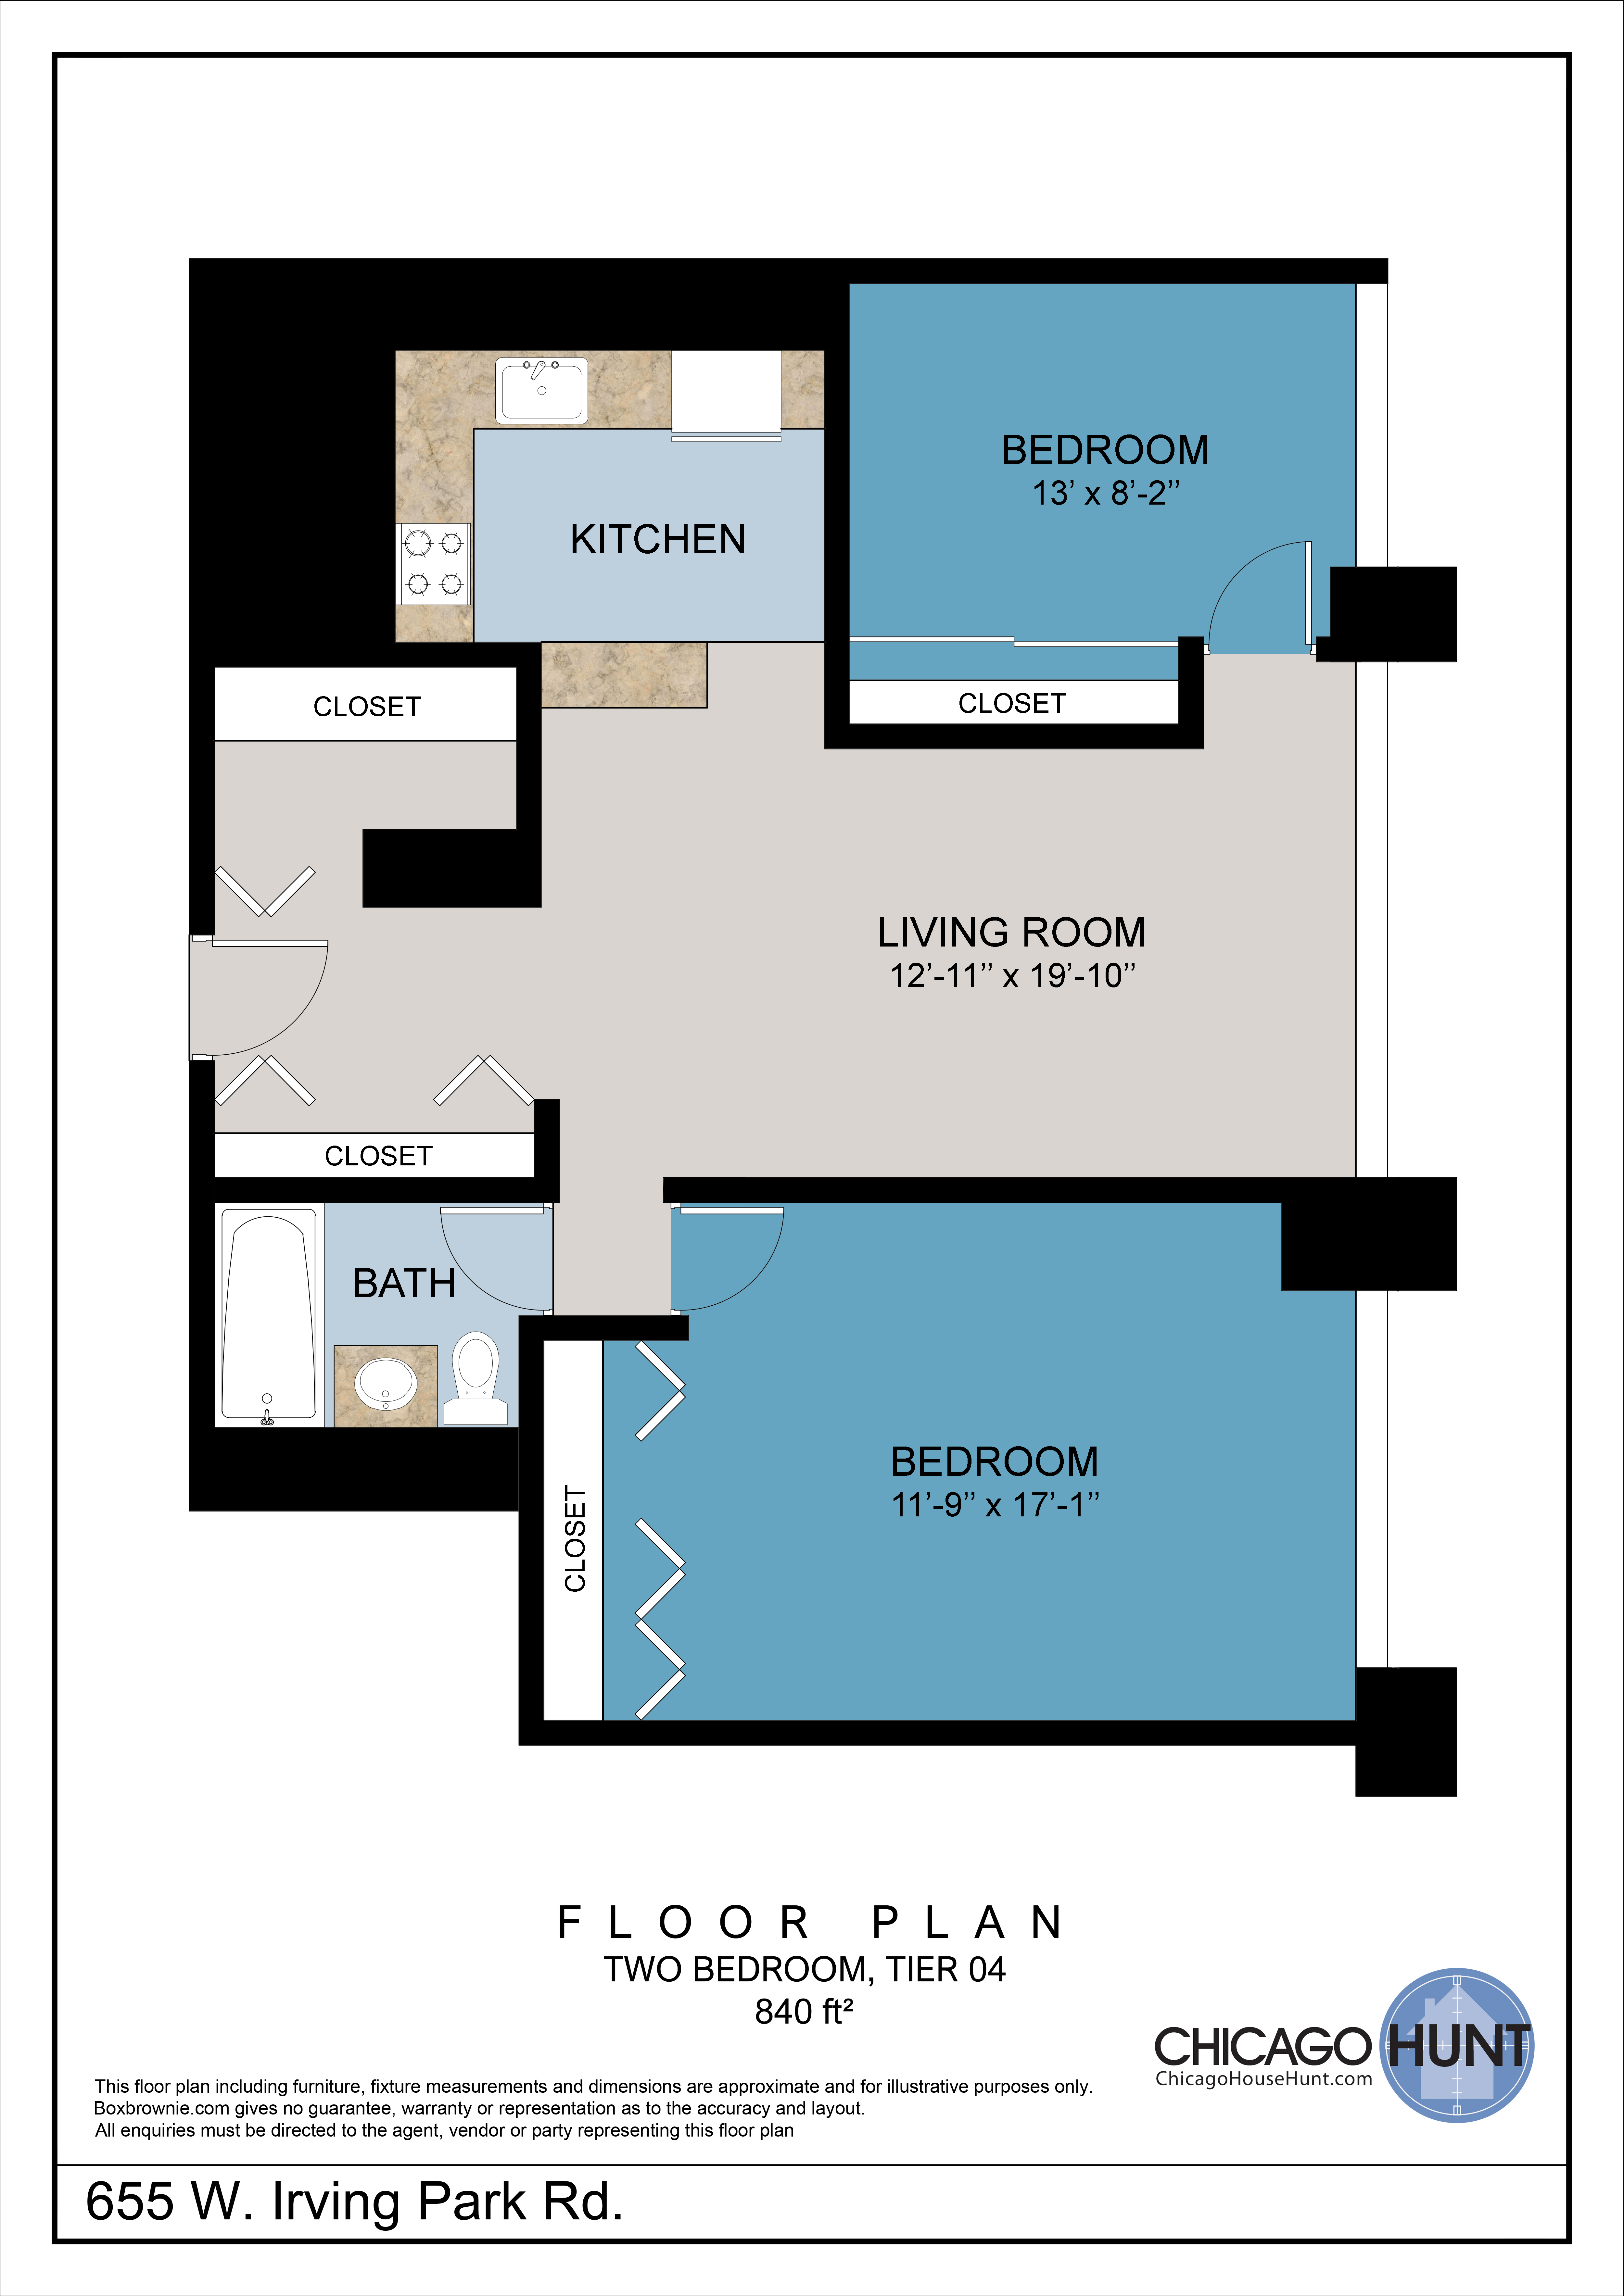 655 Irving Park, Park Place Towere - Floor Plan - Tier 04